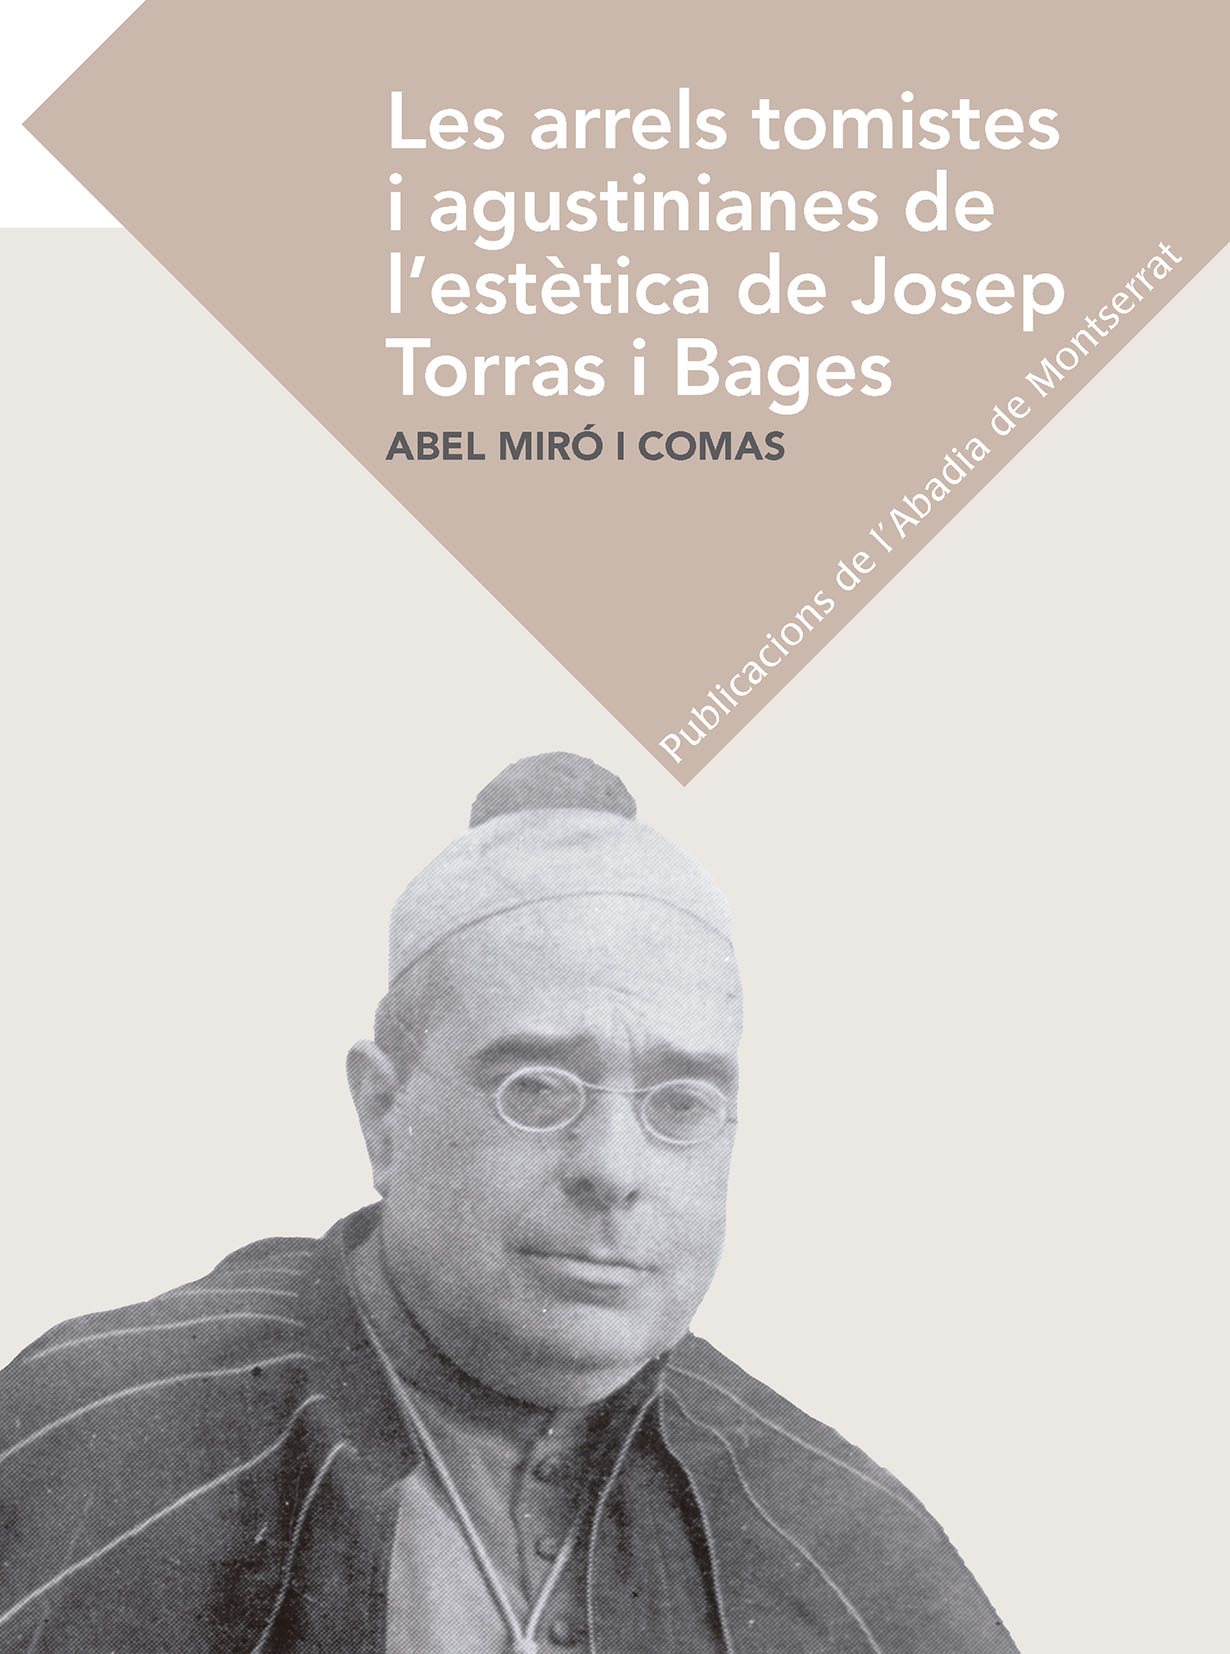 Abel Miró i Comas